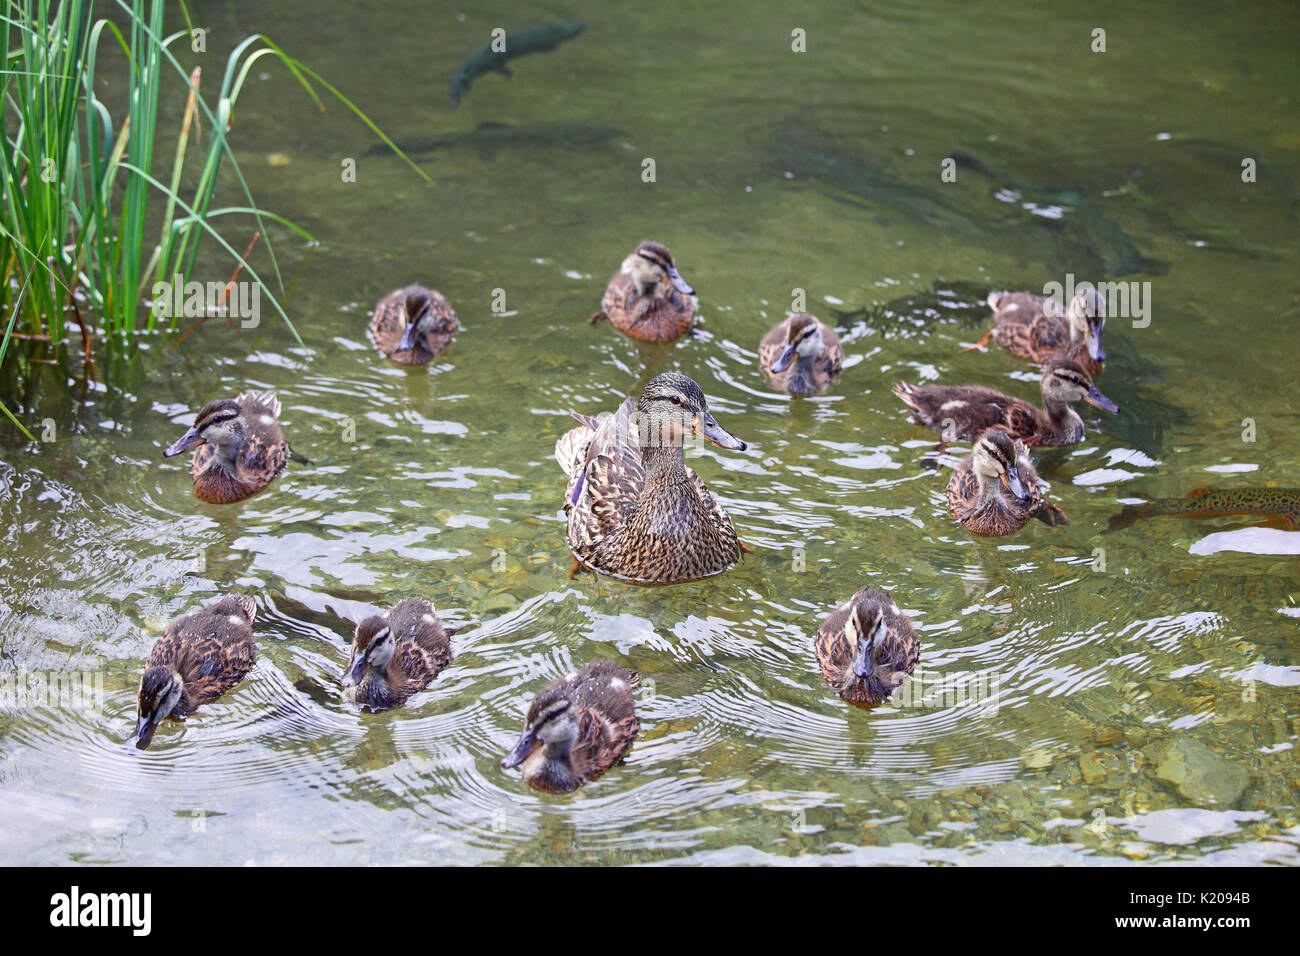 El ánade real (Anas platyrhynchos) con pollitos nadar en el agua, el lago de Constanza, Estiria, Austria Foto de stock